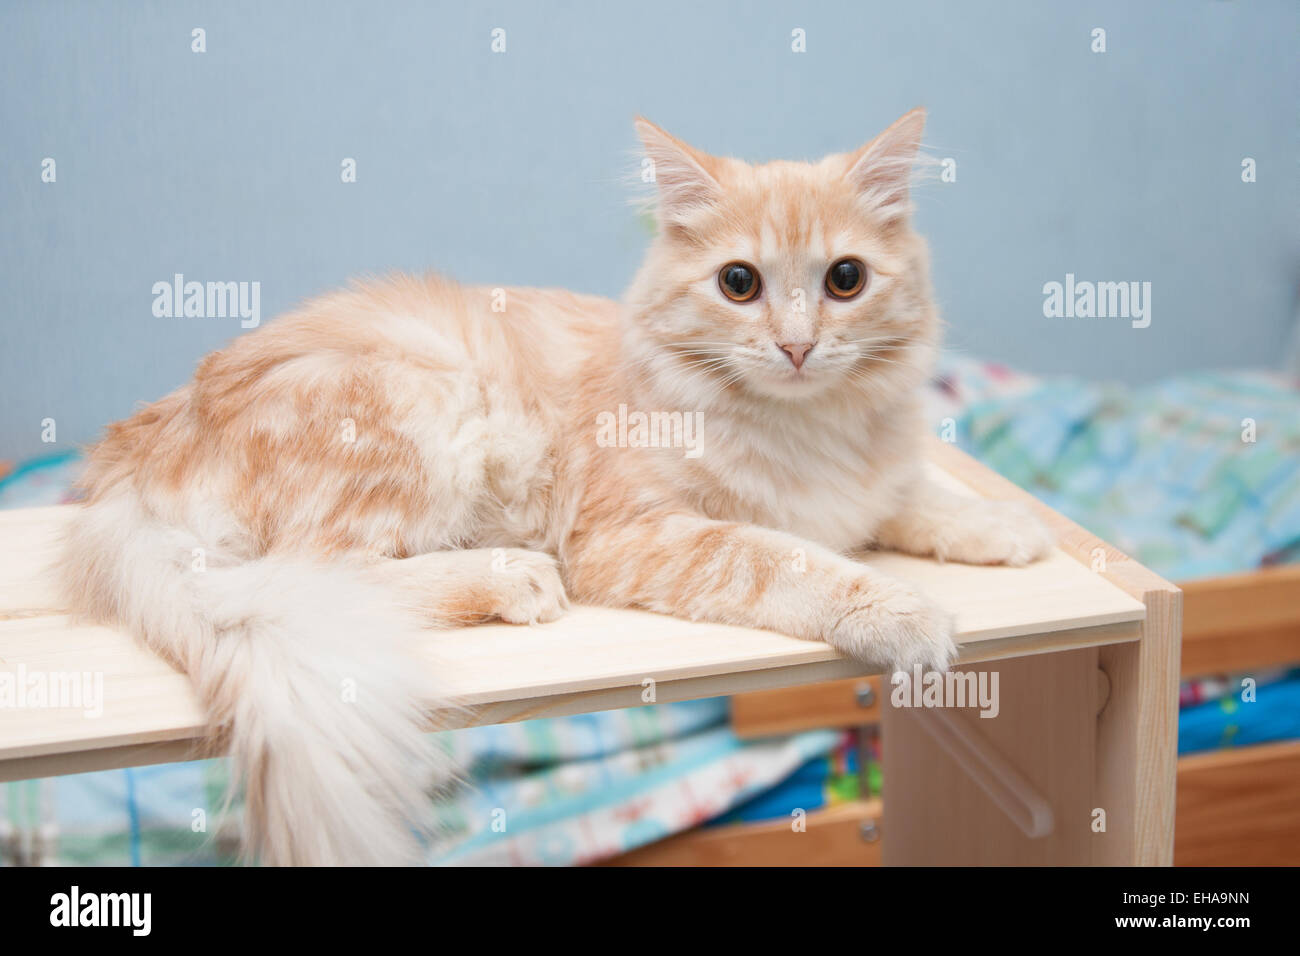 Bianco-rosso gatto con occhi marroni giace su un ripiano e guardando il telaio Foto Stock